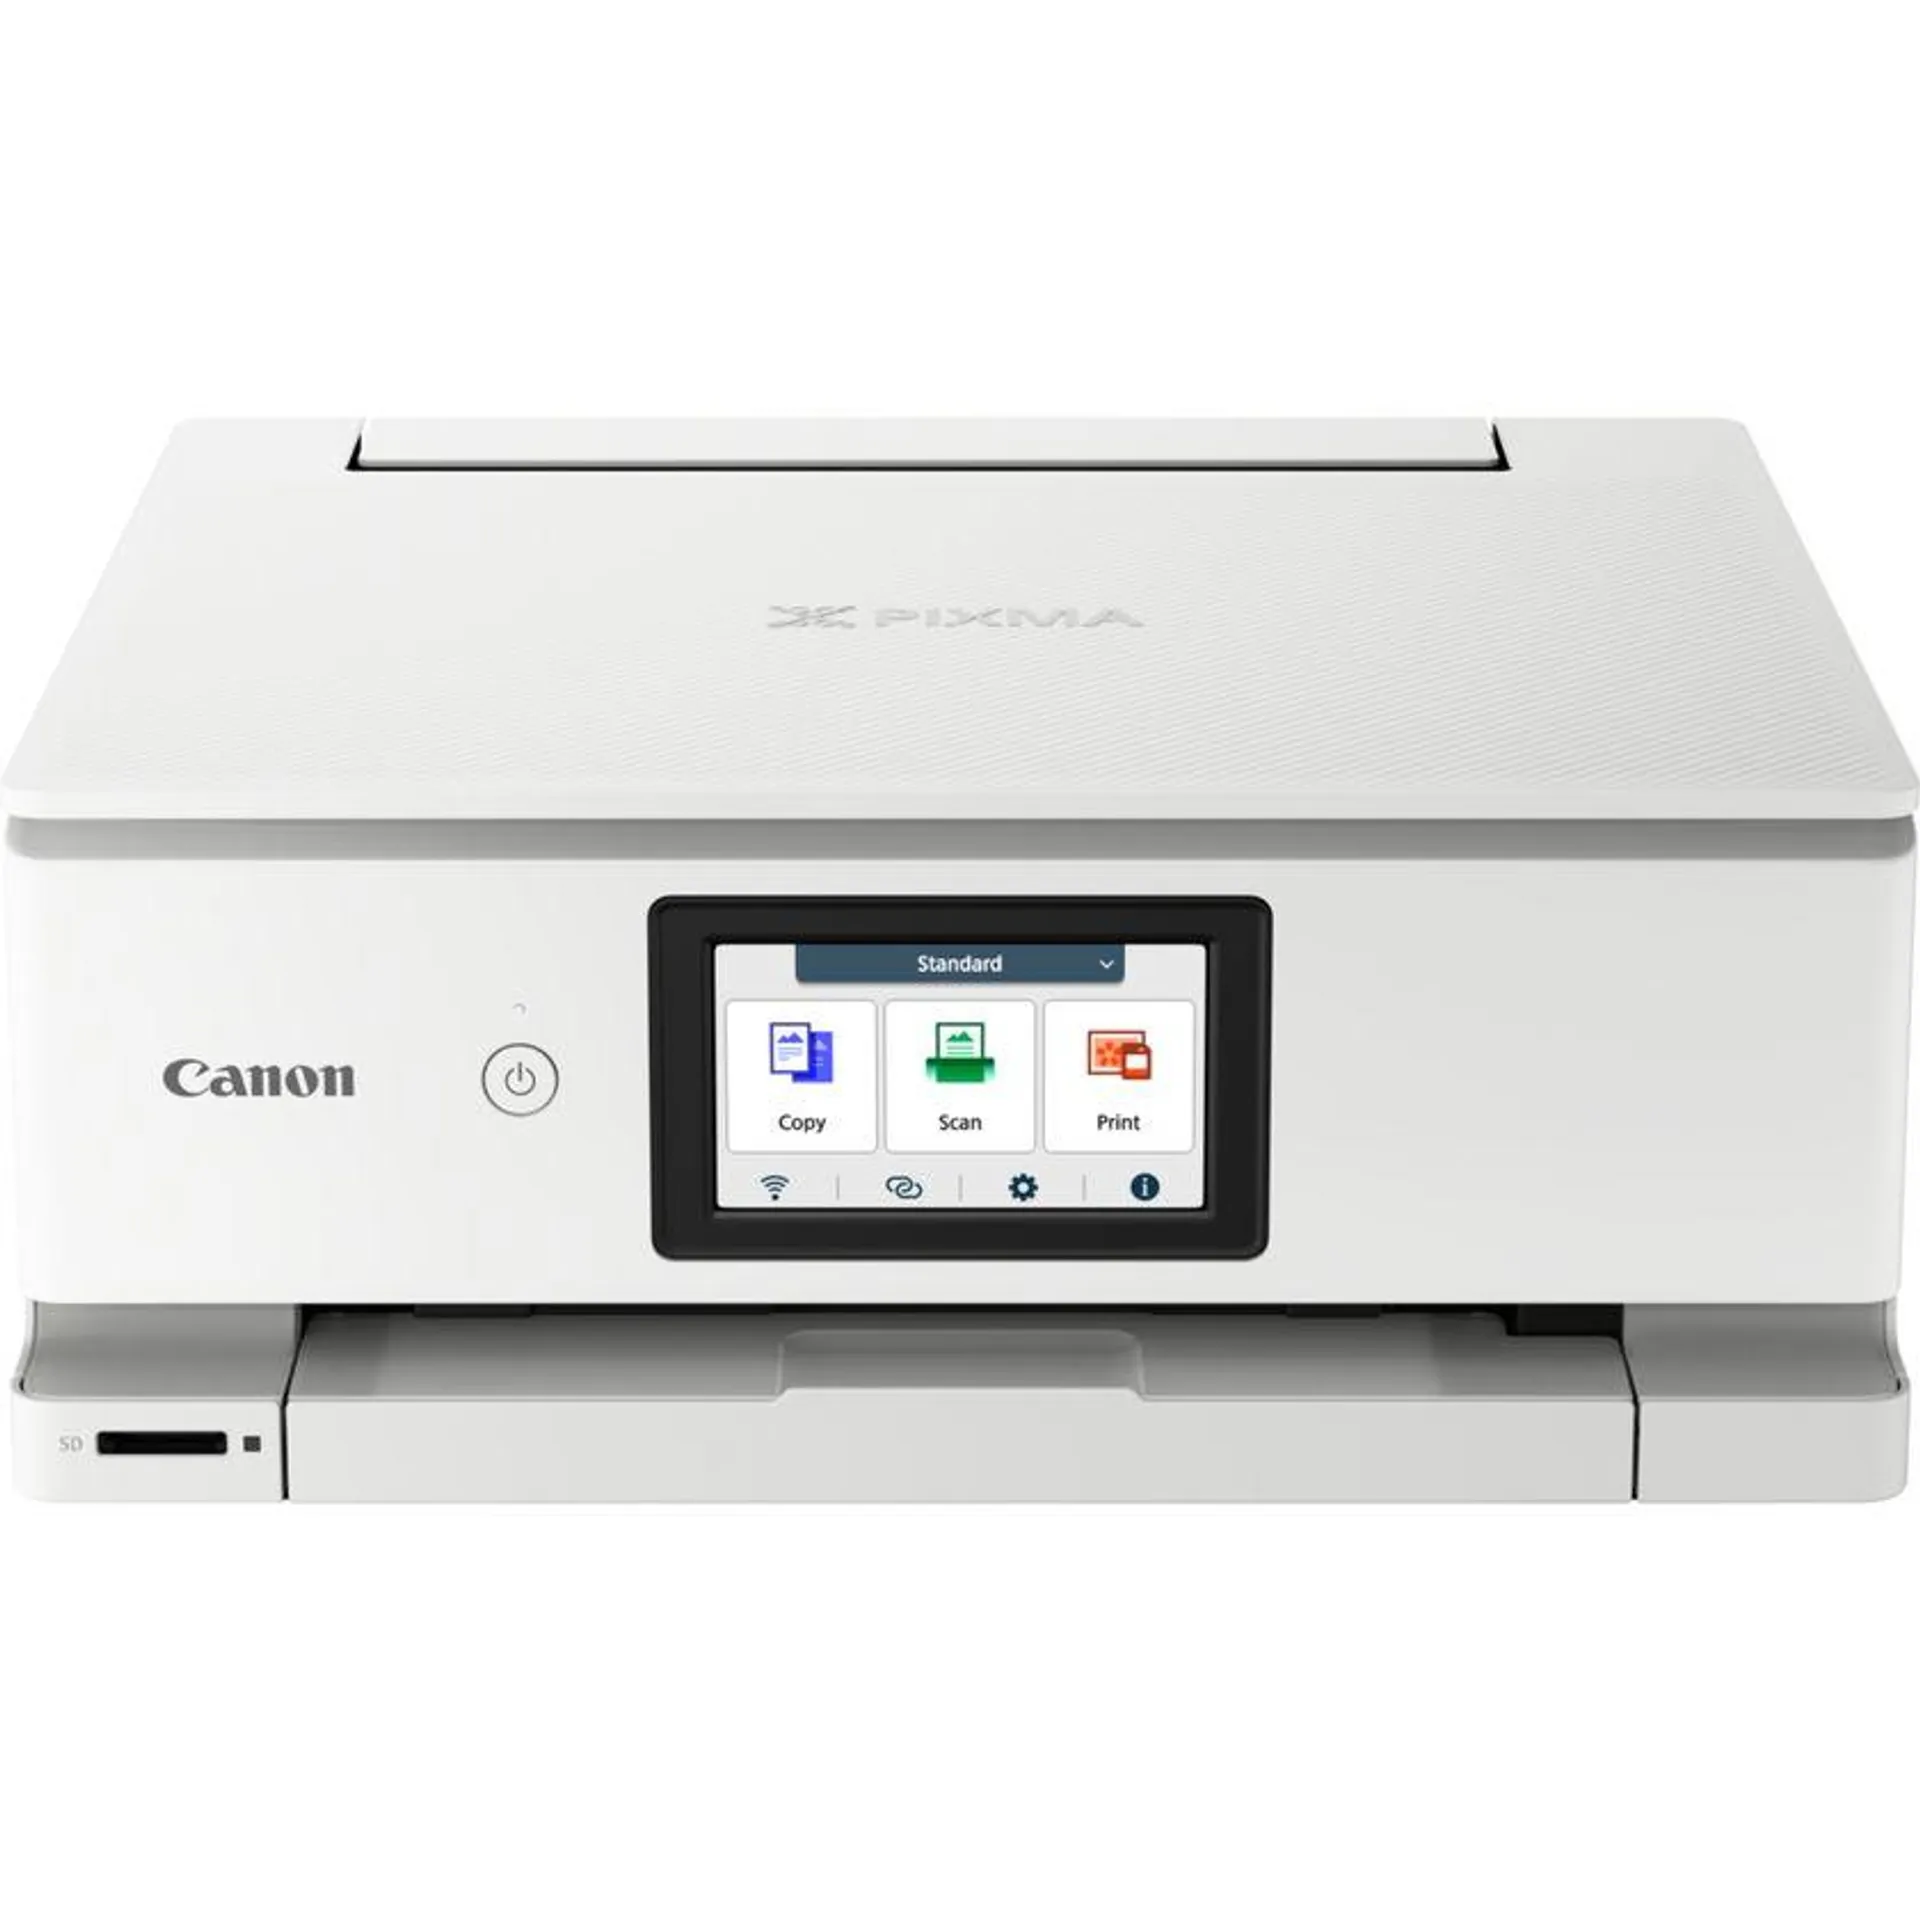 Impresora fotográfica de inyección de tinta en color multifunción e inalámbrica Canon PIXMA TS8751, en blanco